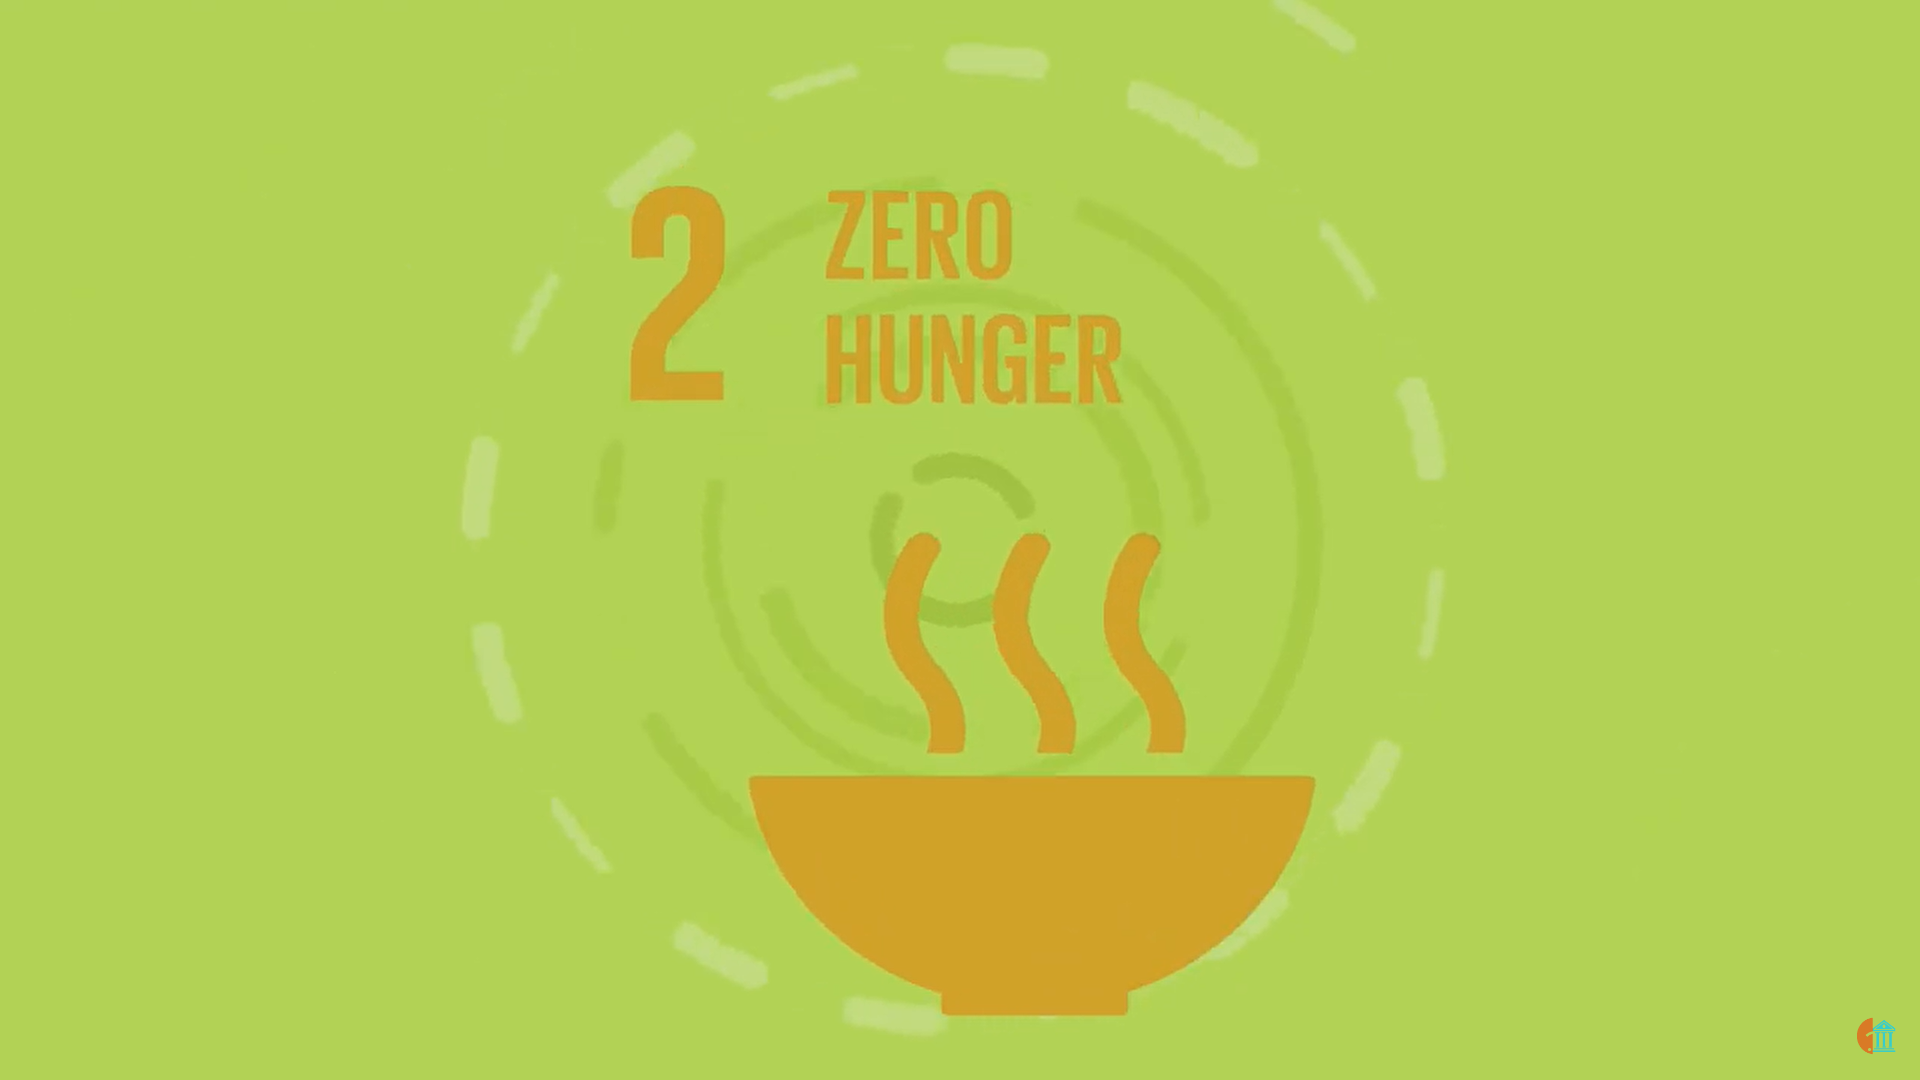 聯合國永續發展目標 2. 消除飢餓 - 2